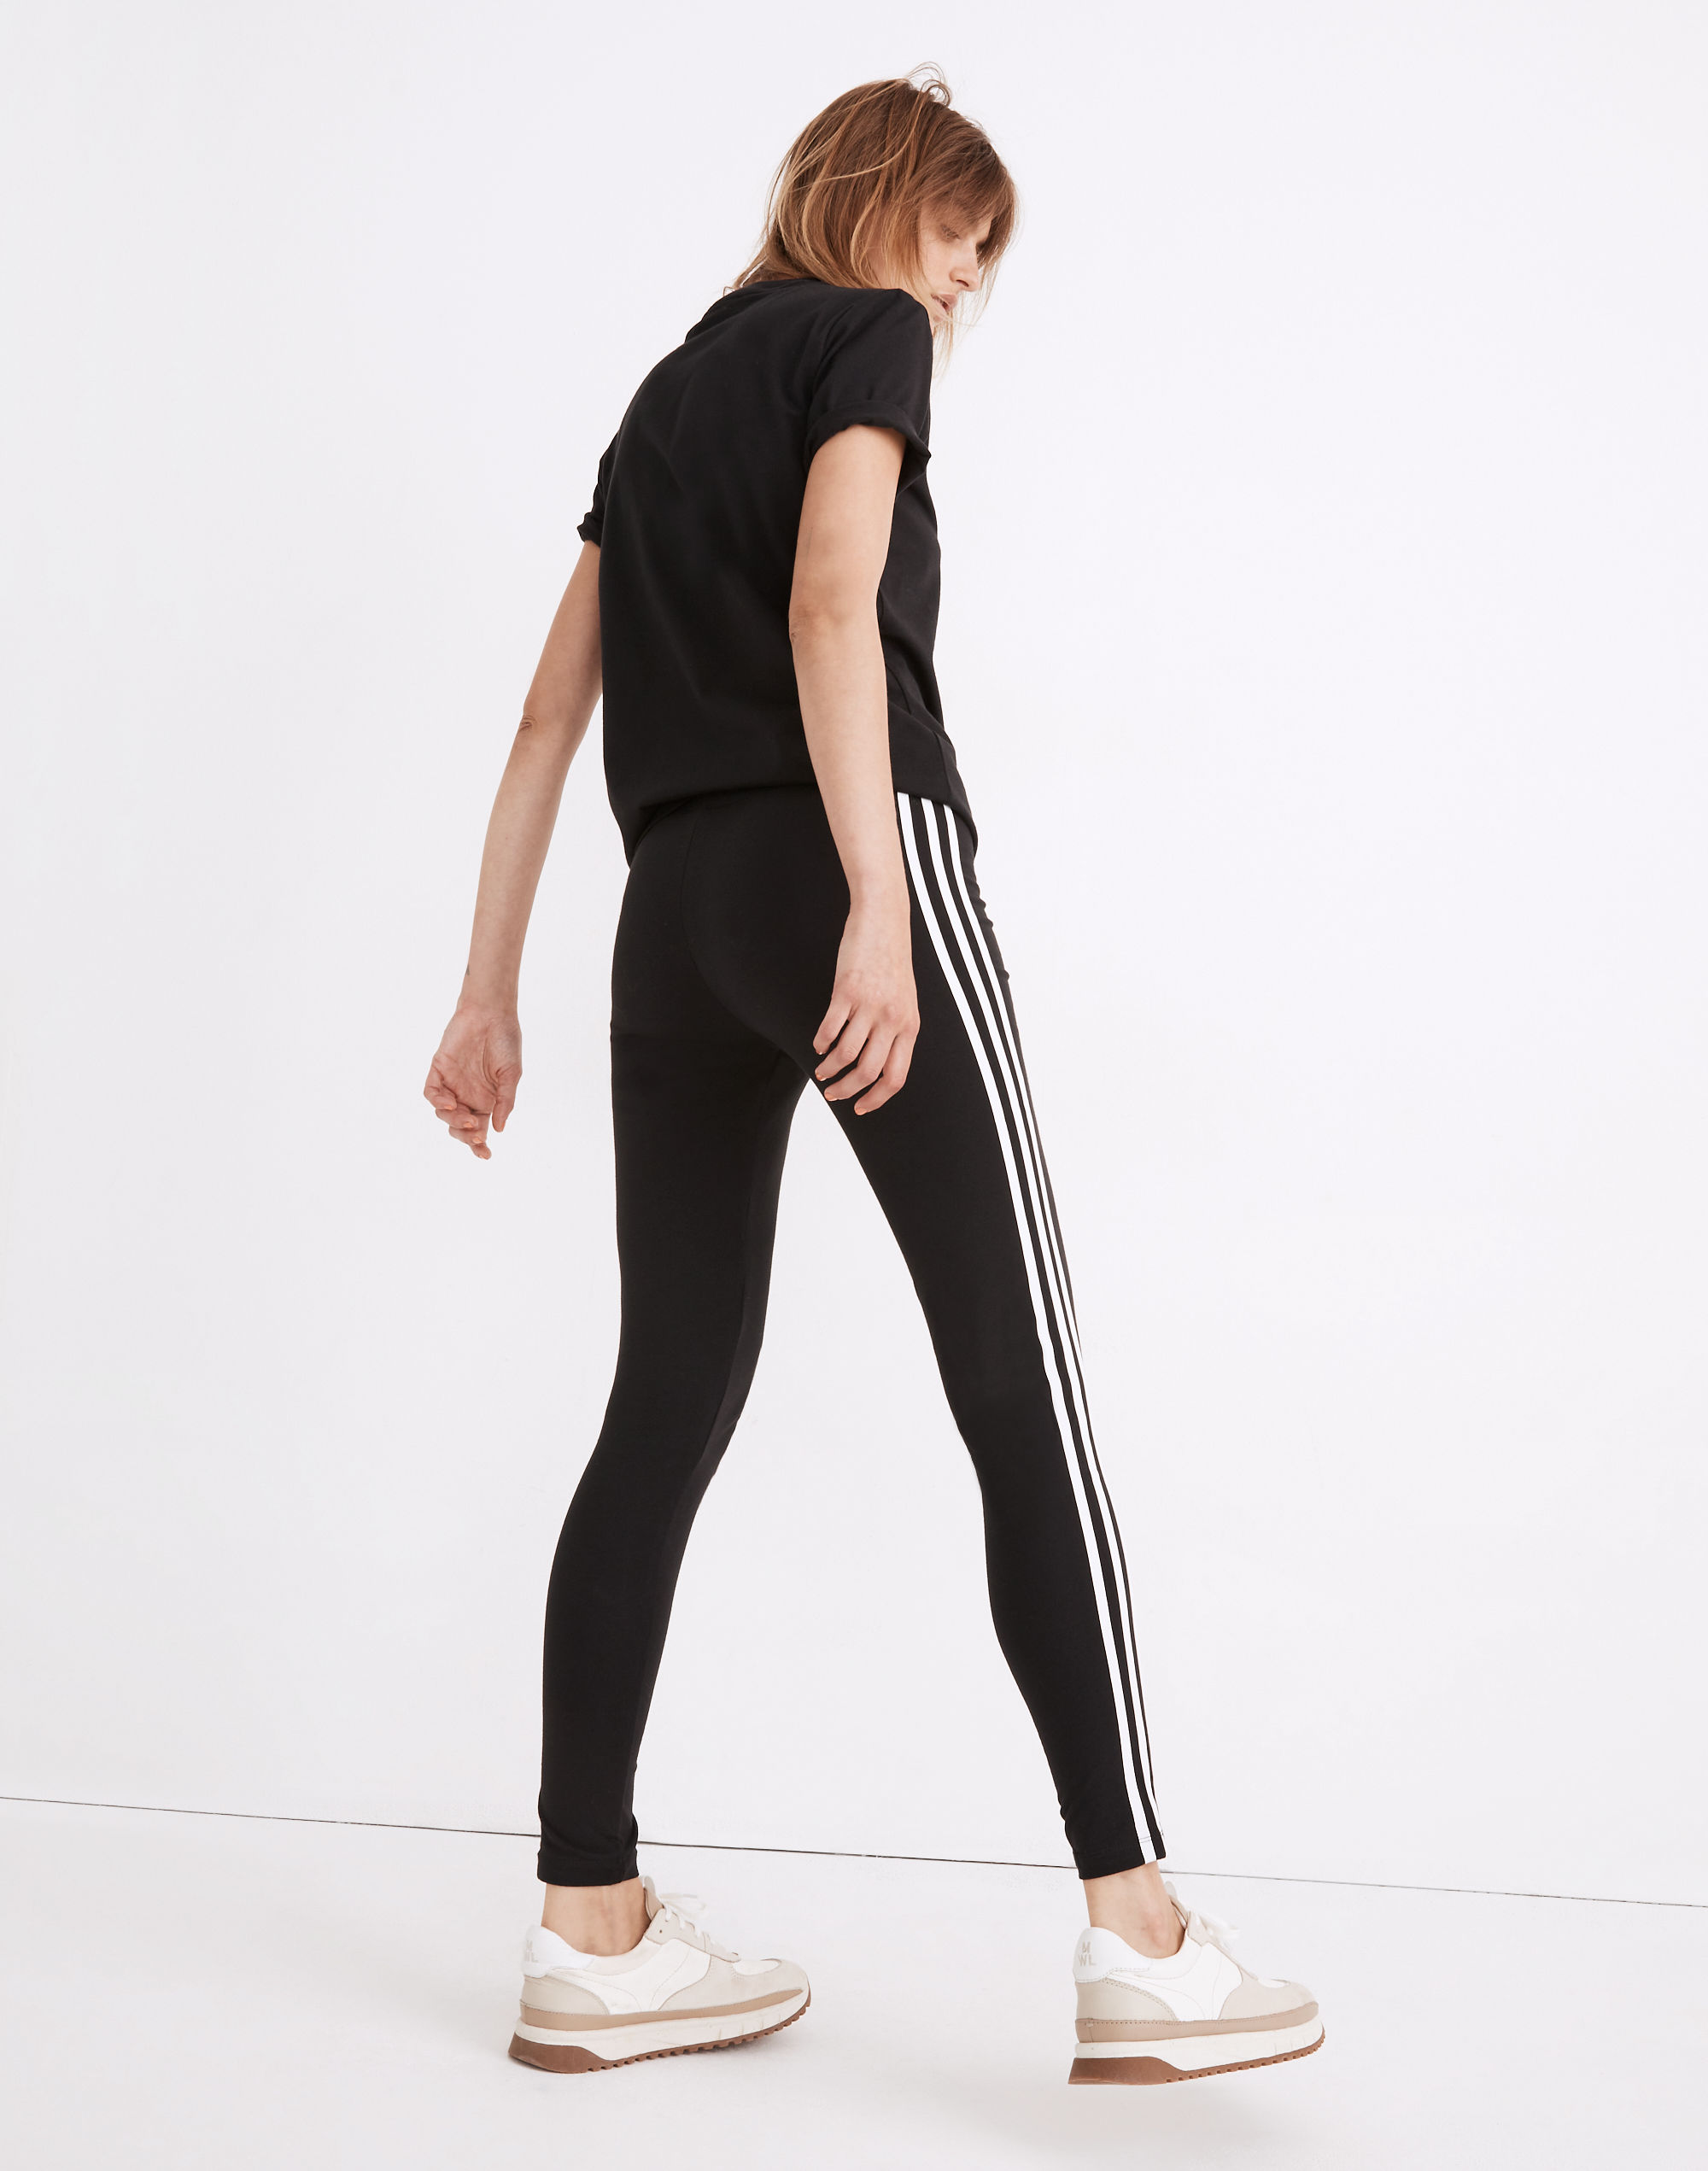 Adidas® Originals 3-Stripes Leggings